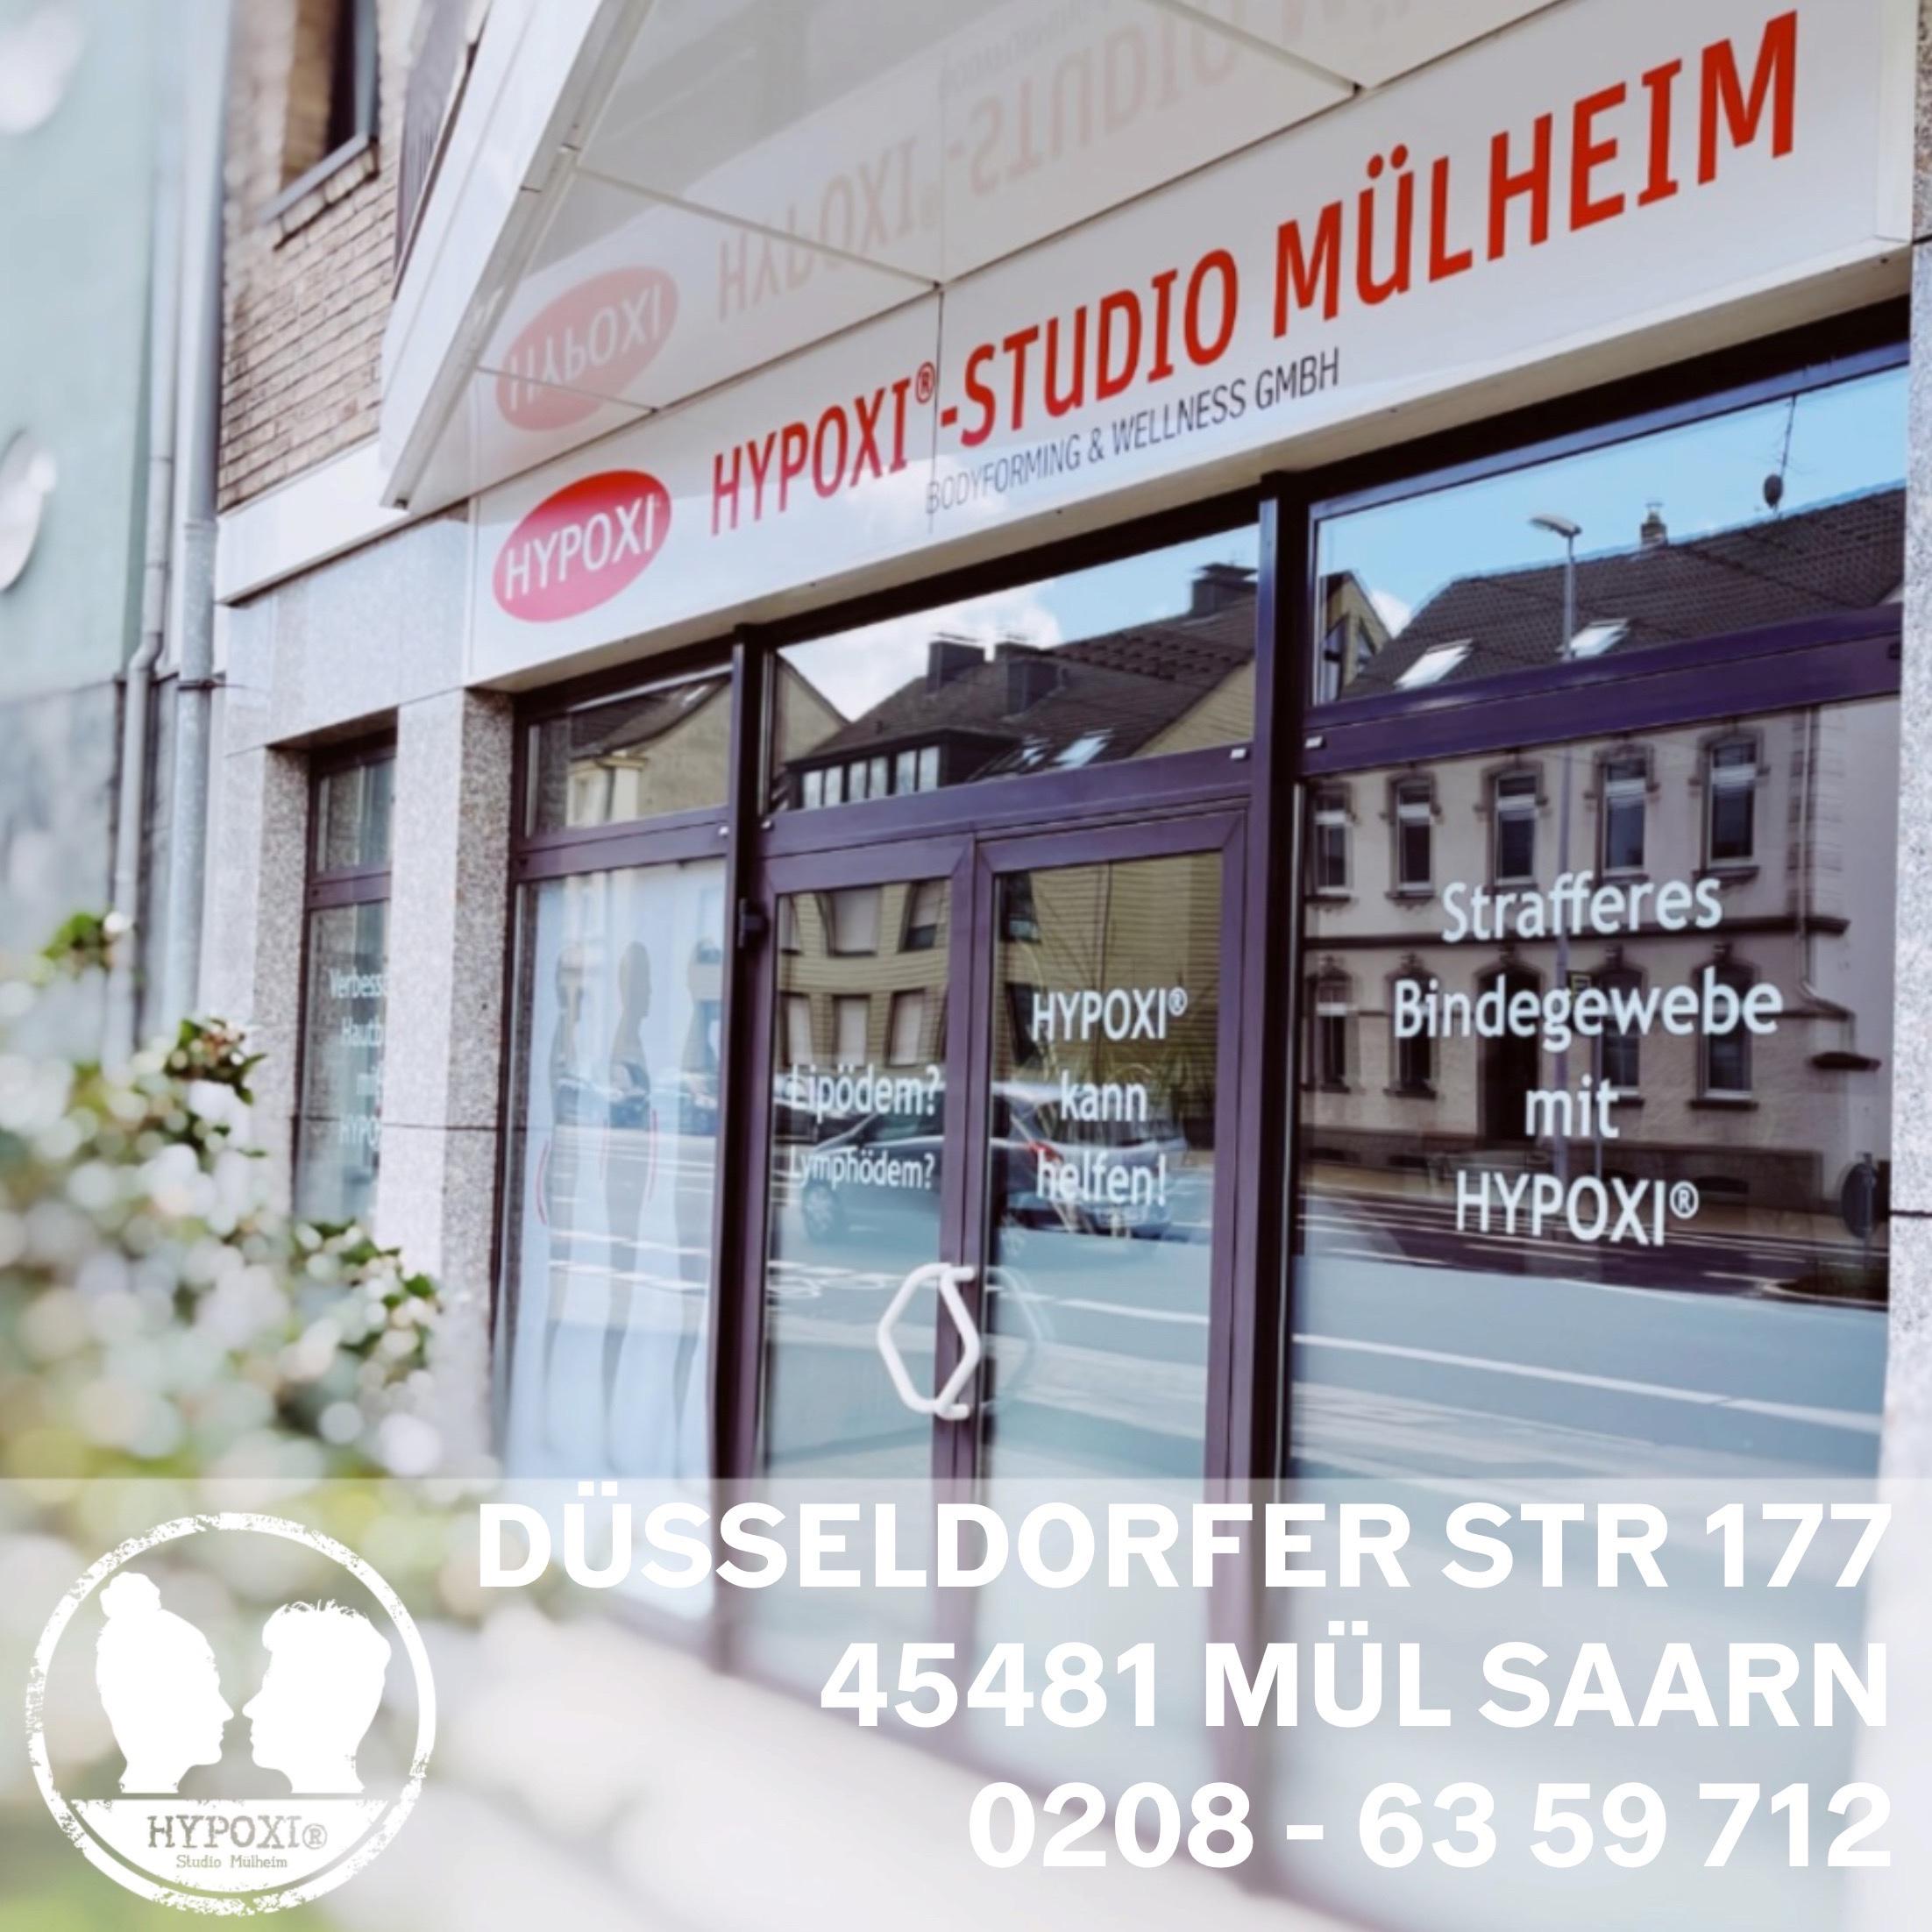 HYPOXI-Studio Mülheim • Bodyforming & Wellness GmbH, Düsseldorfer Strasse 177 in Mülheim an der Ruhr